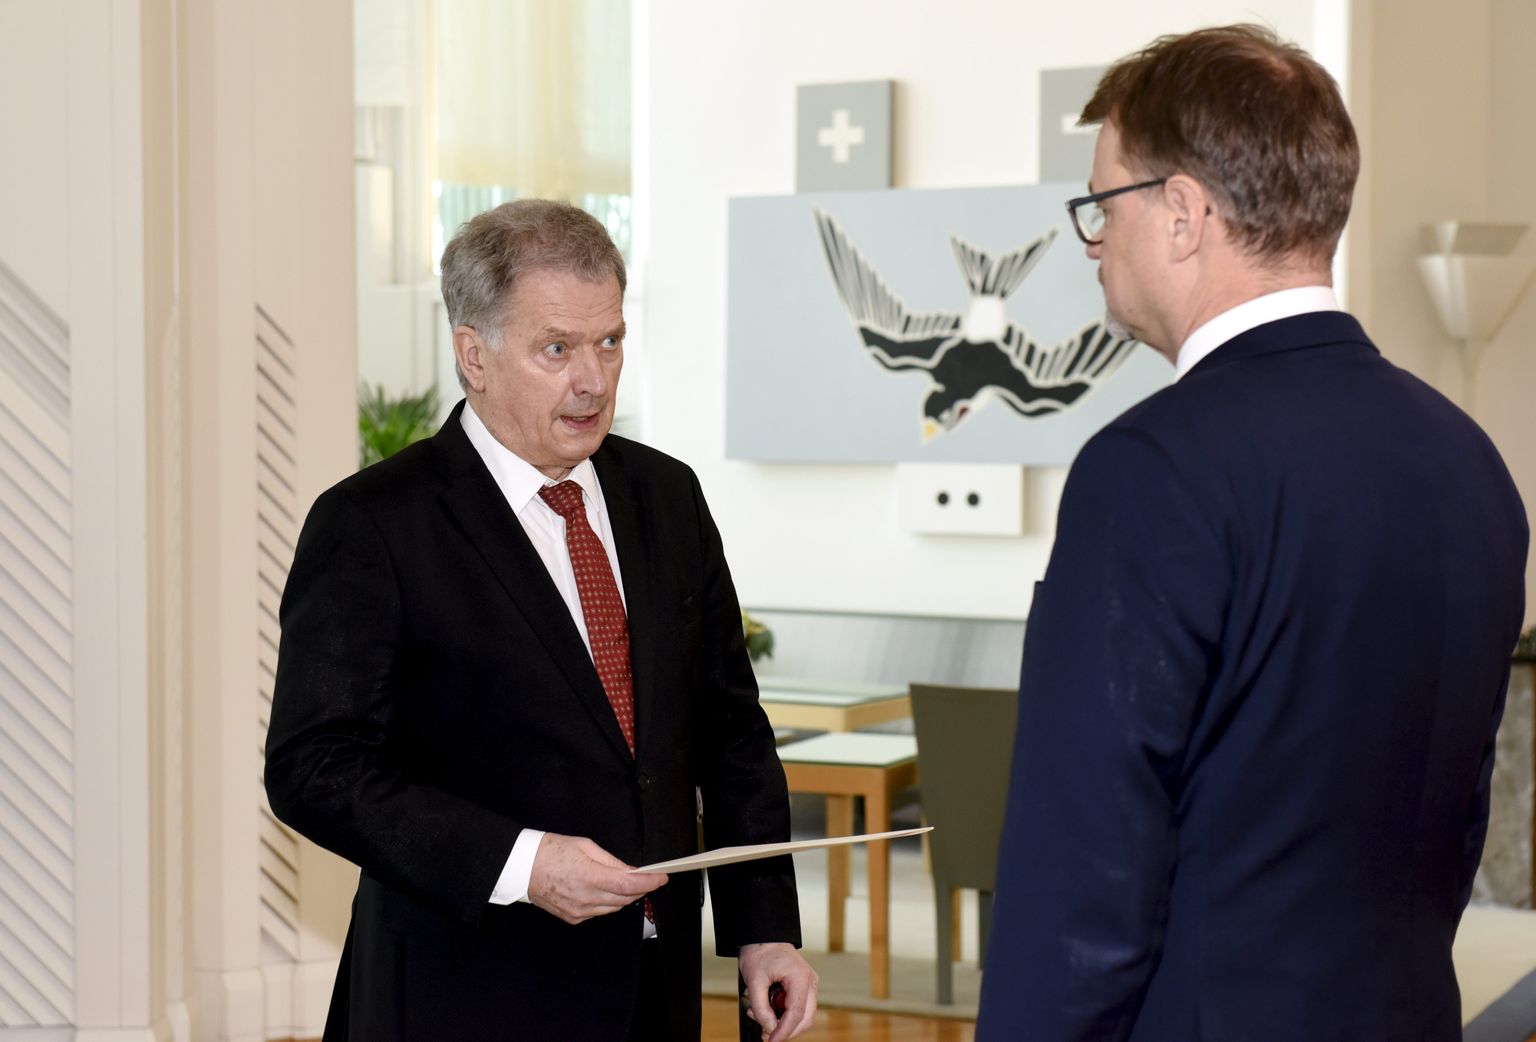 Soome president Sauli Niinistö 8. märtsil peaminister Juha Sipilä lahkumisavaldust vastu võttes.